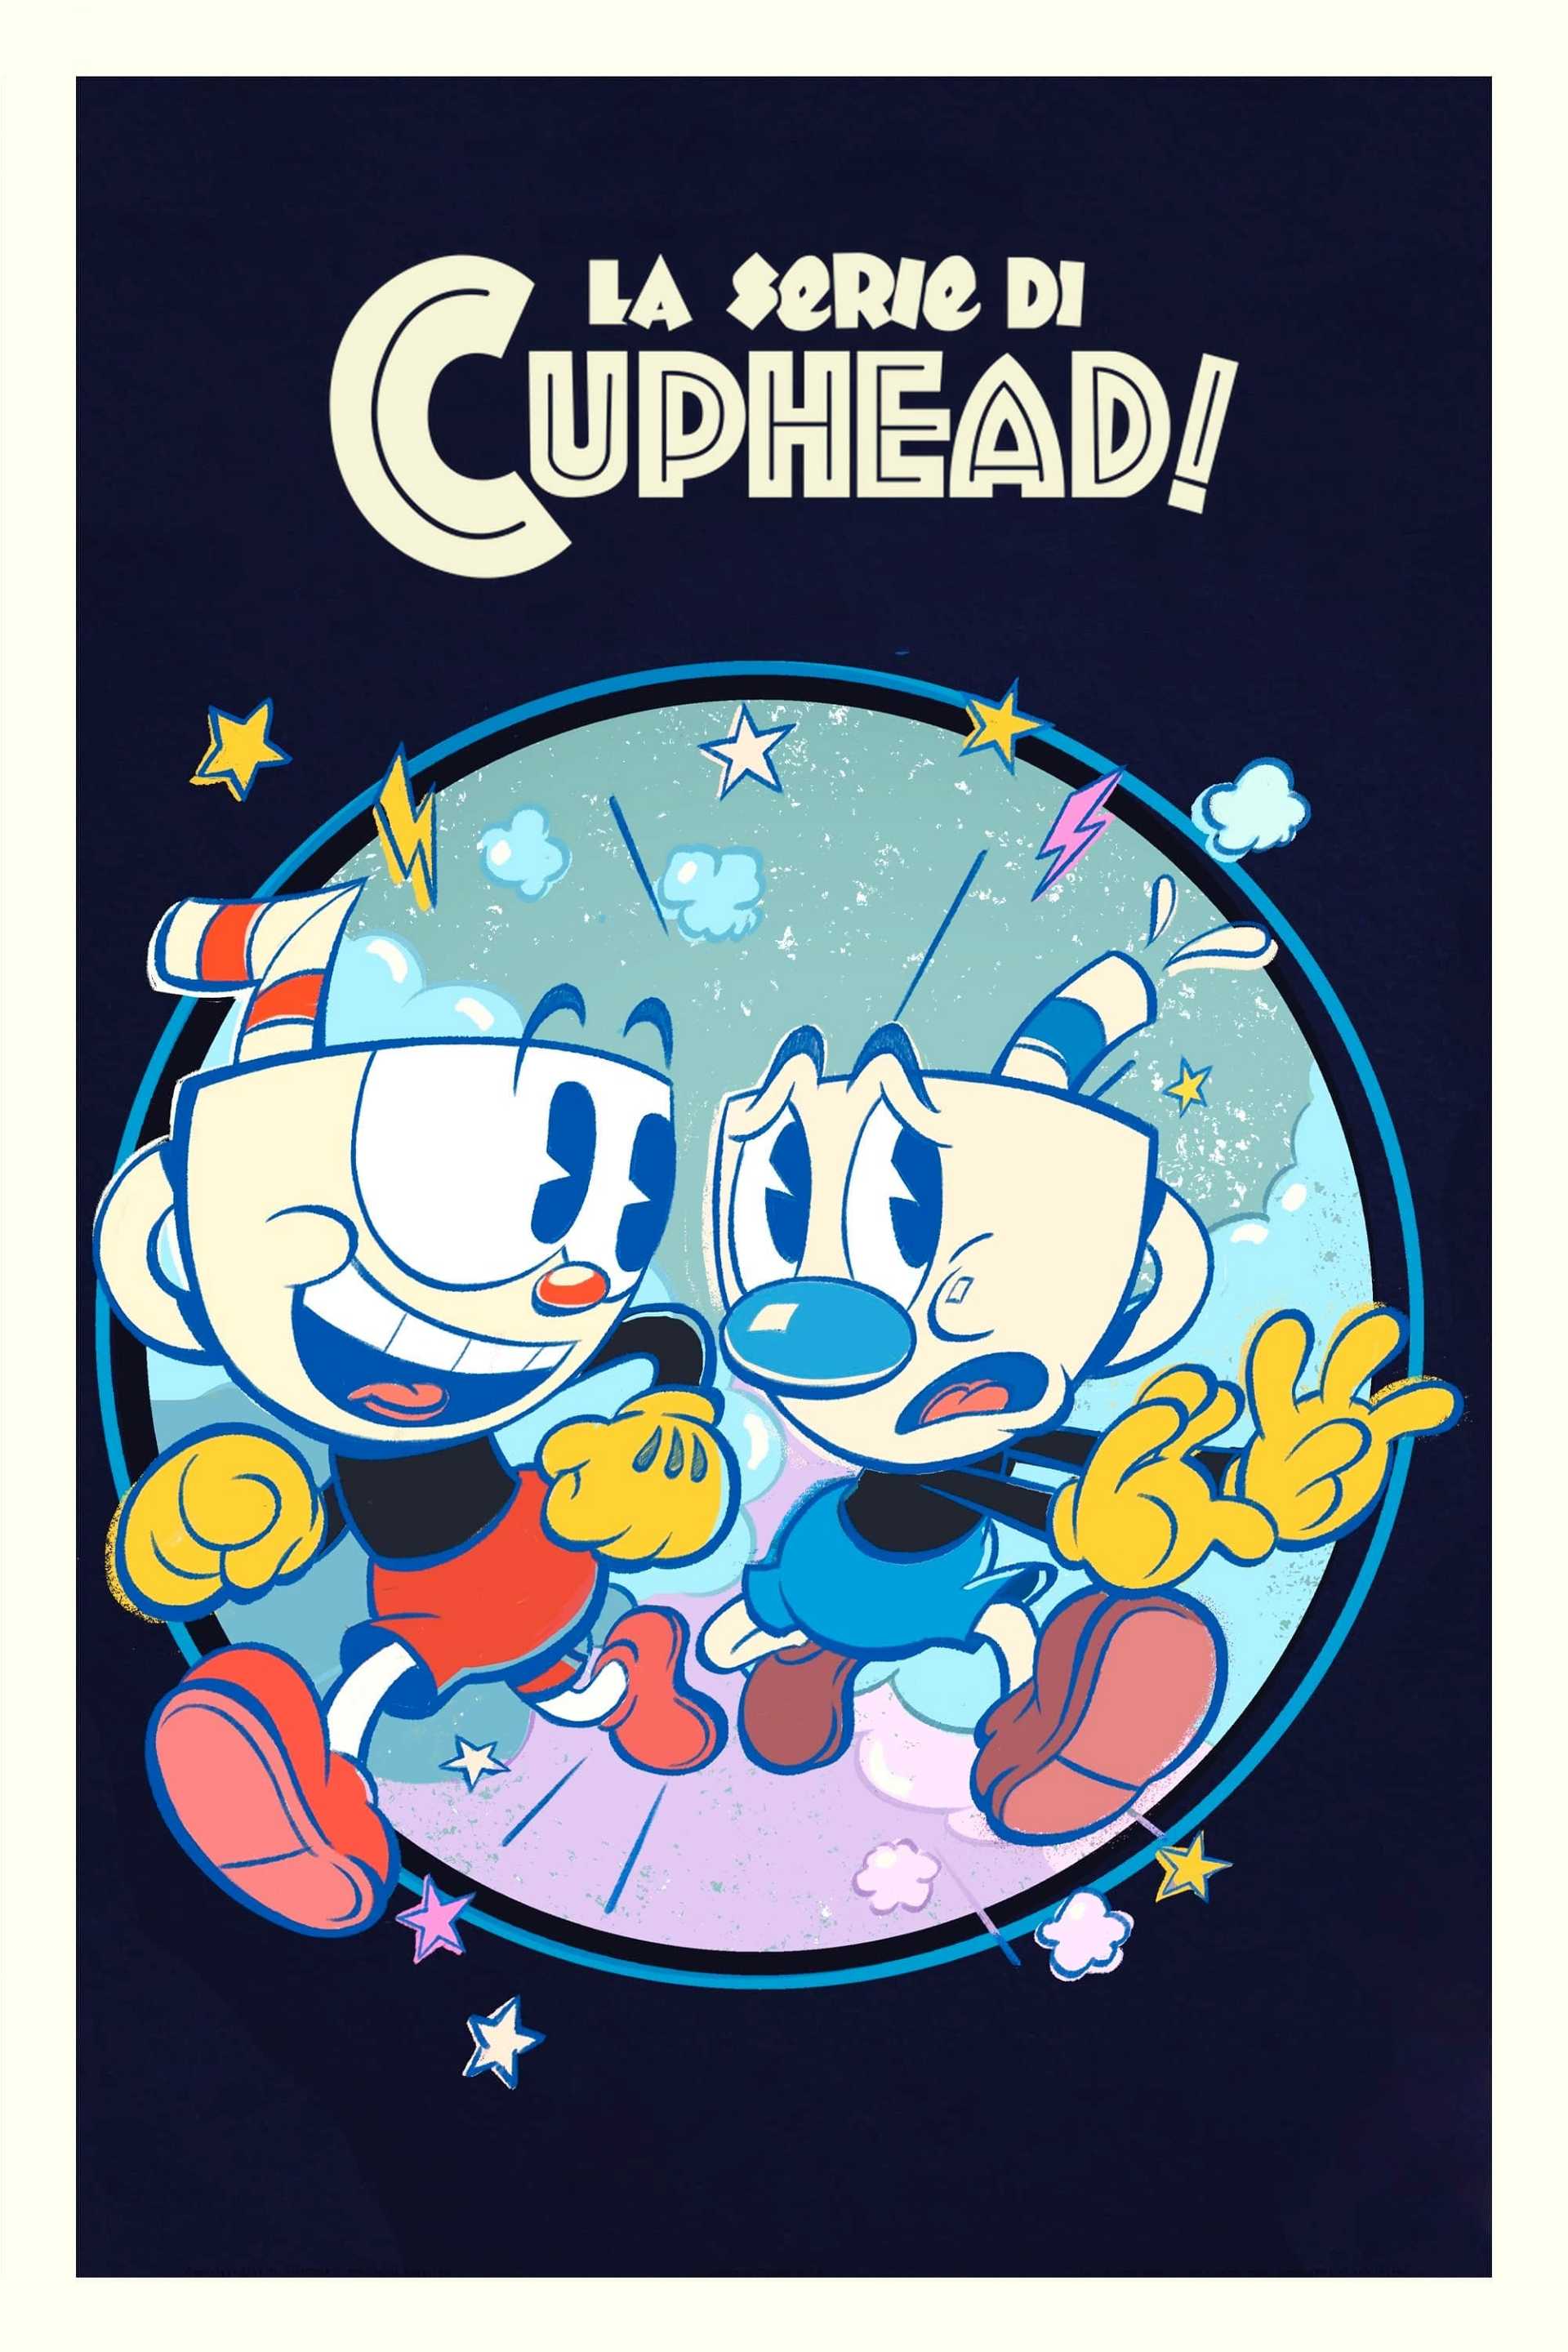 La serie di Cuphead! in streaming